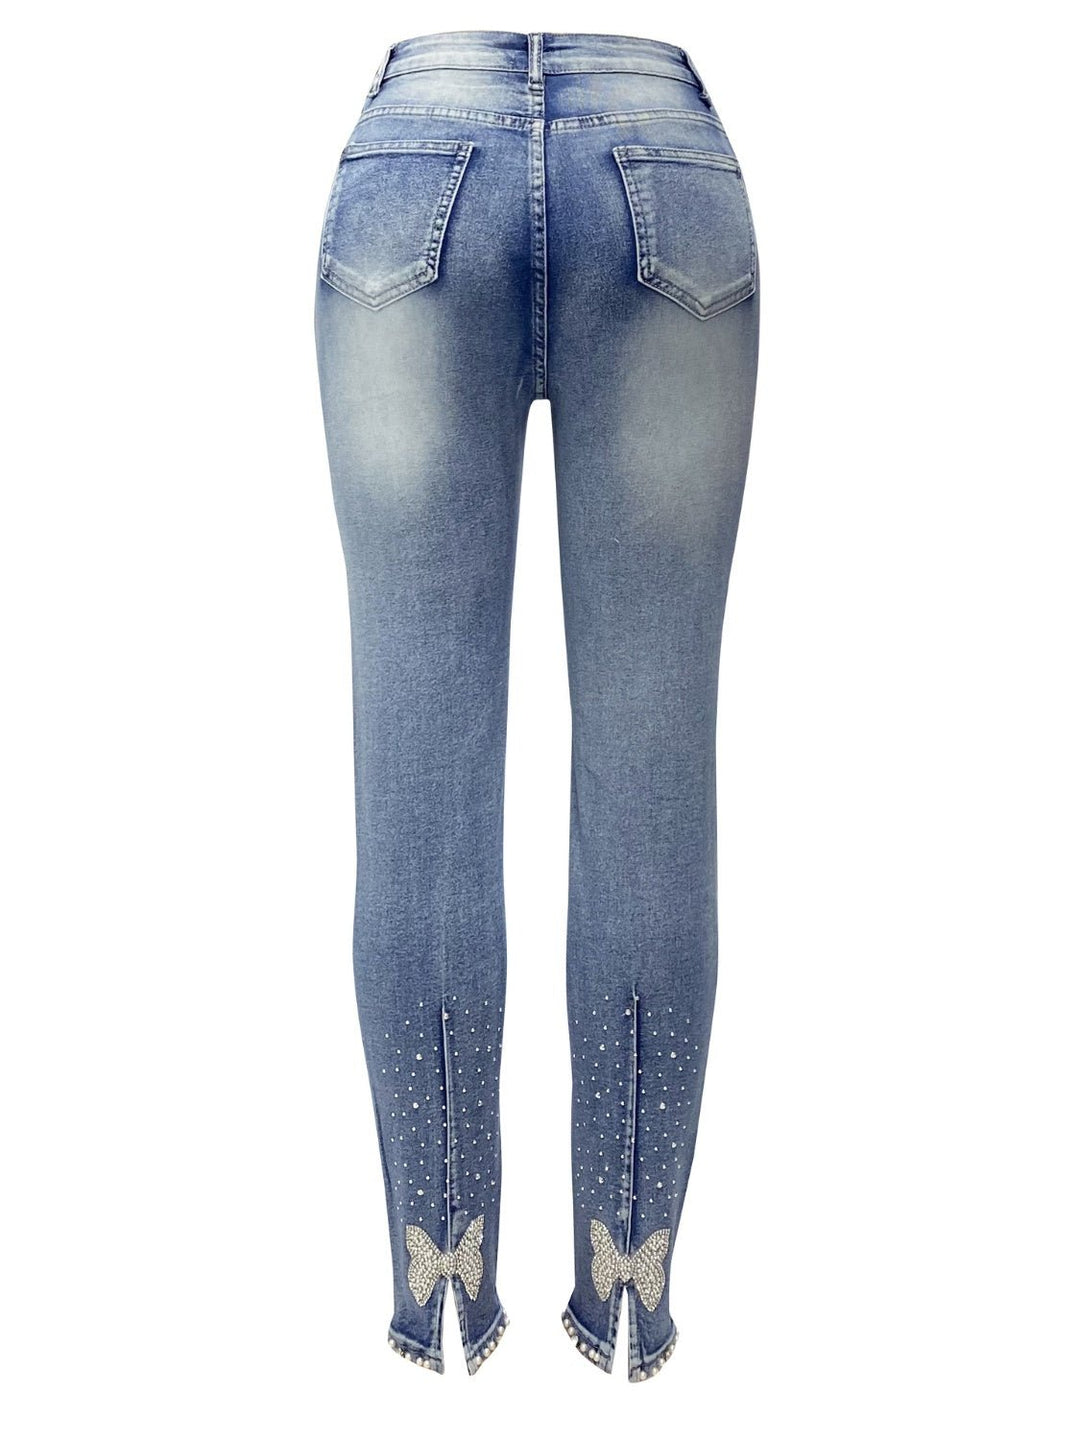 Rhinestone Skinny Jeans with Pockets